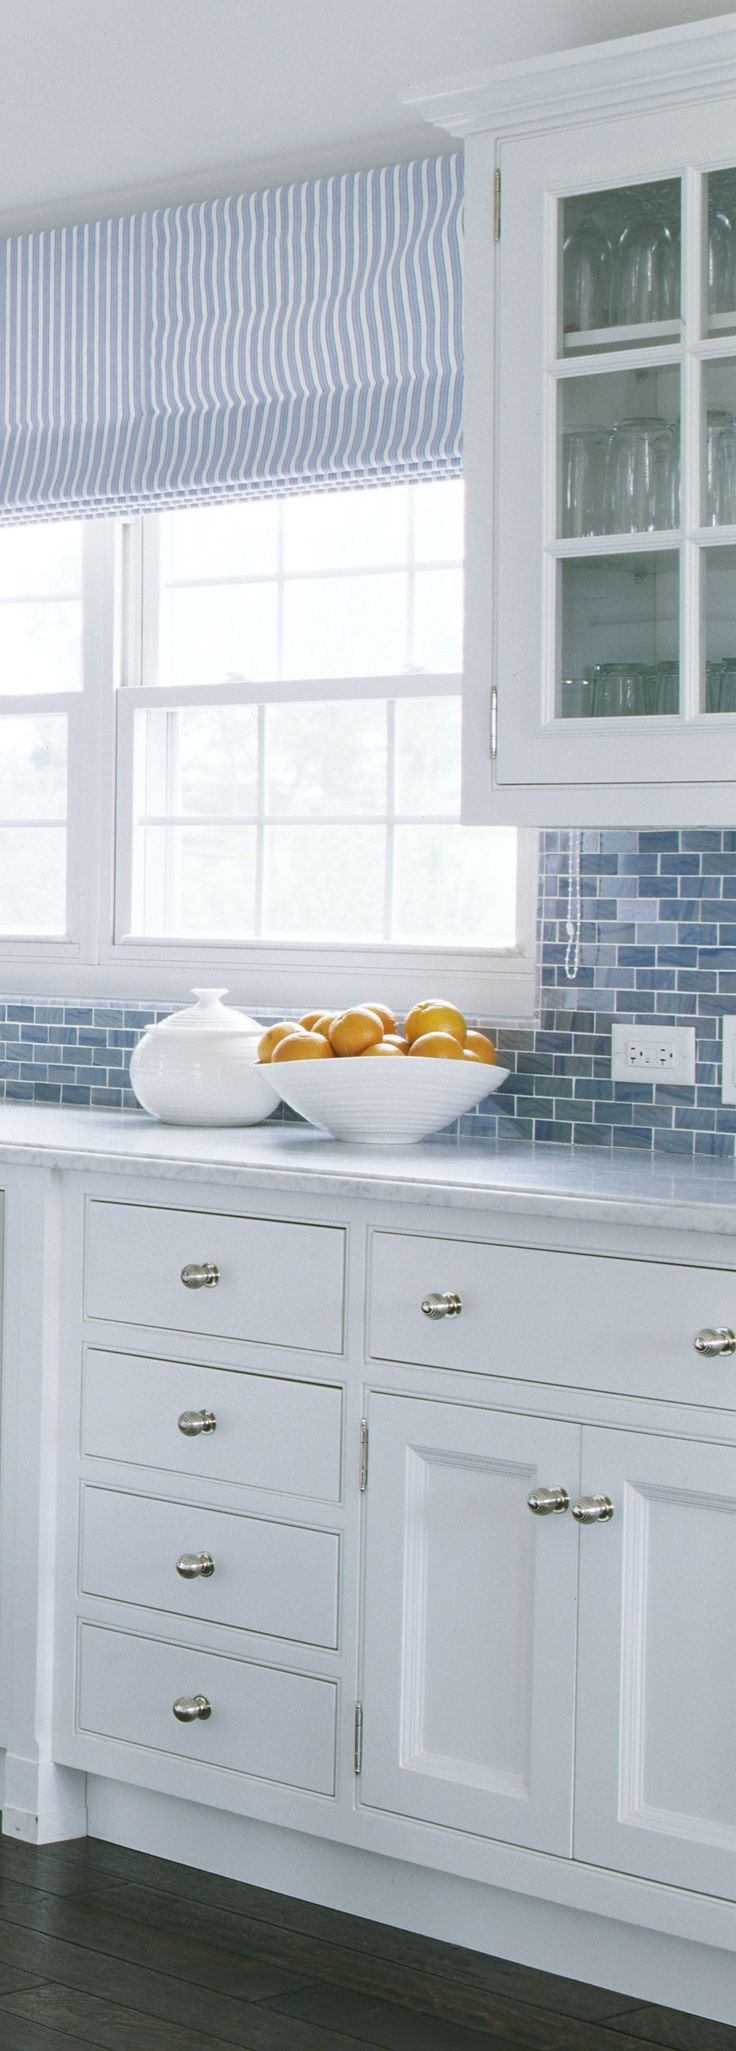 White Kitchen Tile Backsplash
 Coastal Kitchen Hardware Check